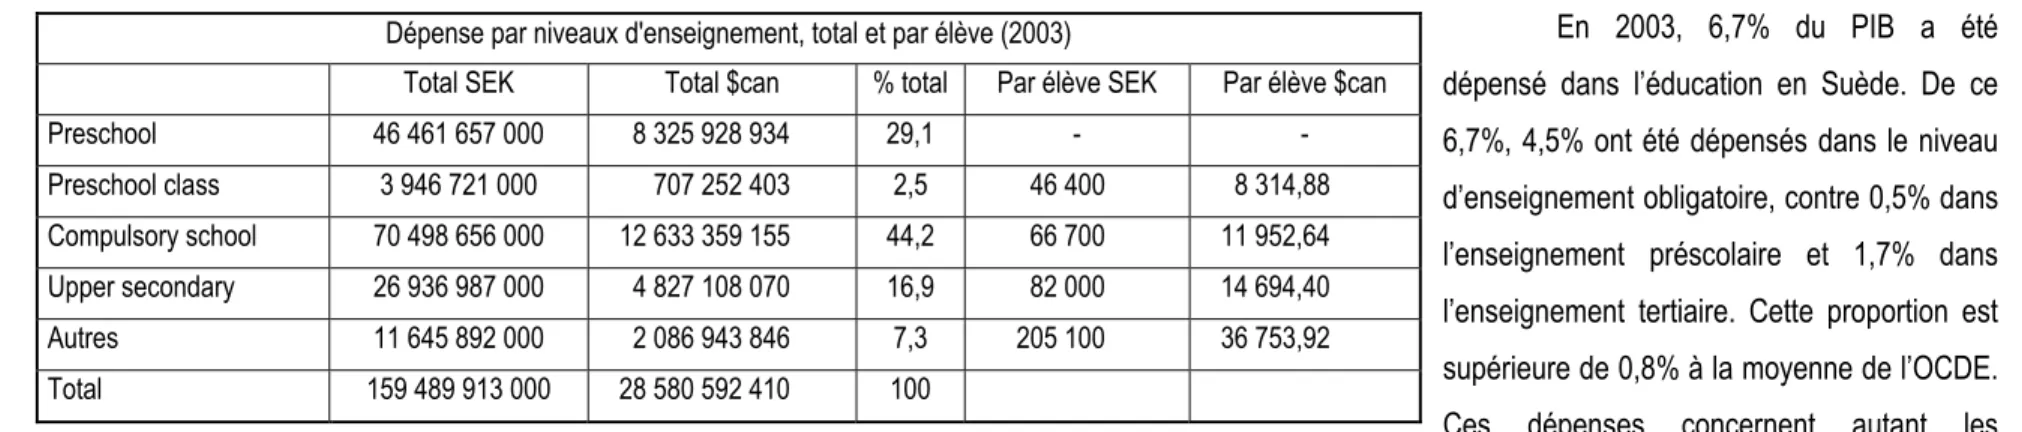 Tableau 3.1 : Dépense par niveau d’enseignement en Suède (Réalisé par J.P. Source : Sveriges officiella statistik, 2003) 